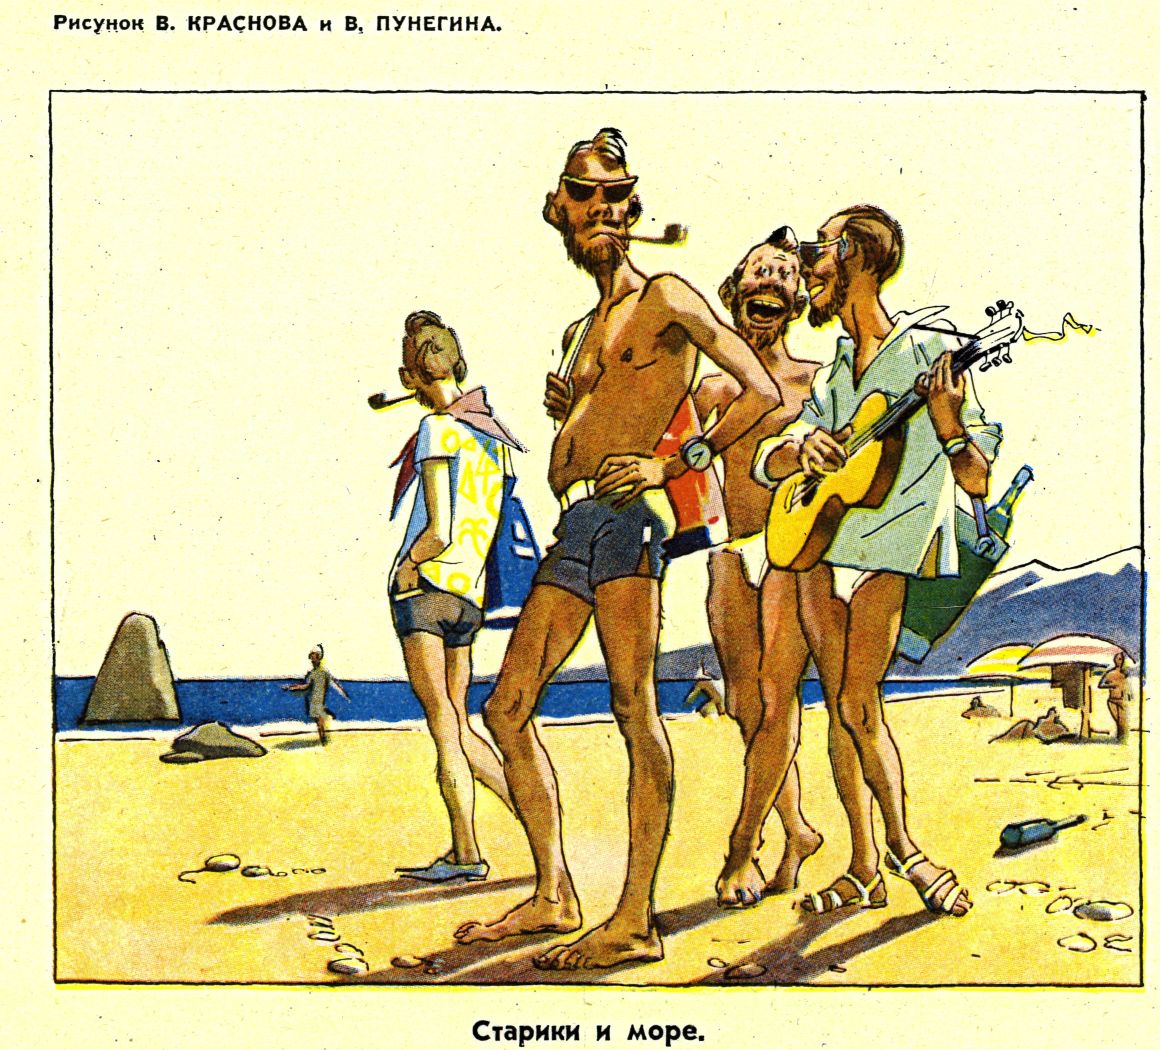 Авторы рисунка высмеивают моду на ношение бороды среди молодёжи, а также её увлечение повестью Э. Хемингуэя «Старик и море». 1961 год